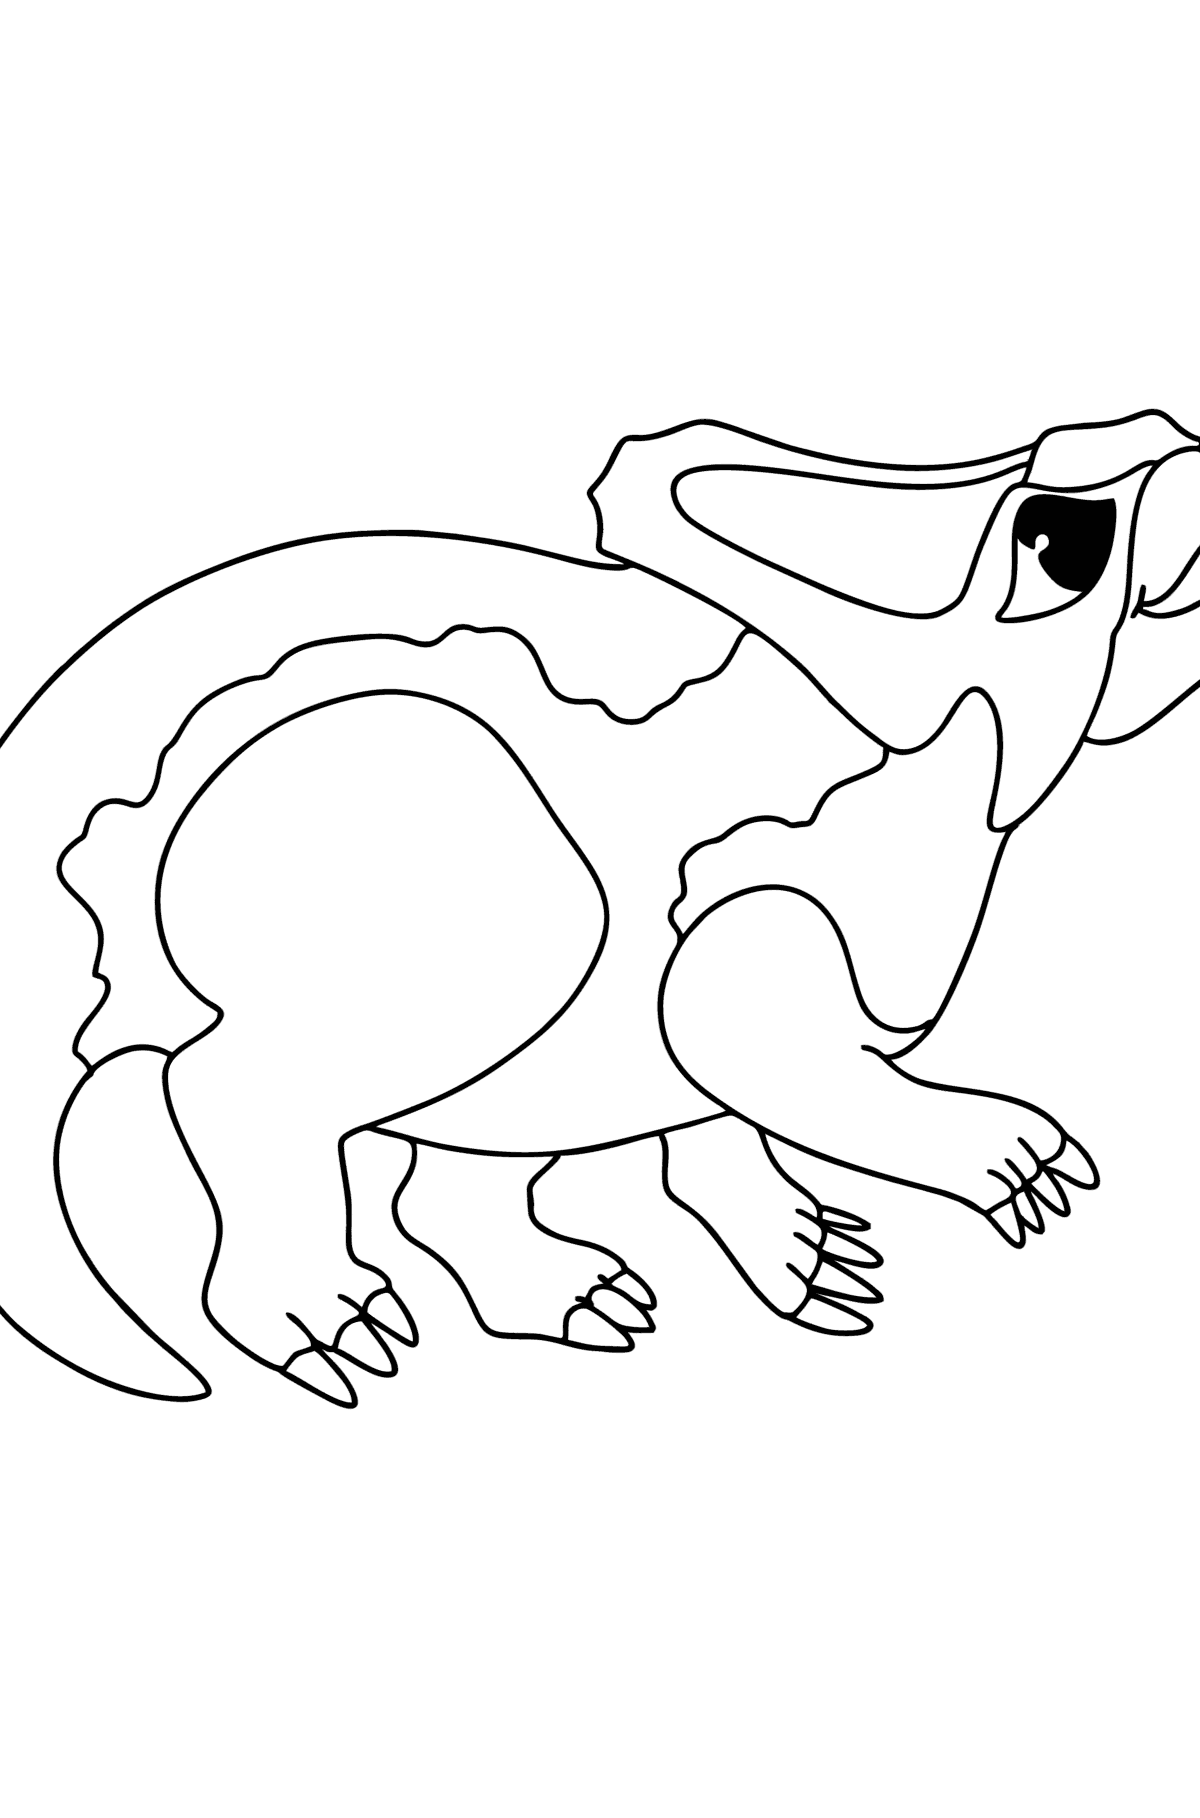 Ausmalbild Protoceratops - Malvorlagen für Kinder